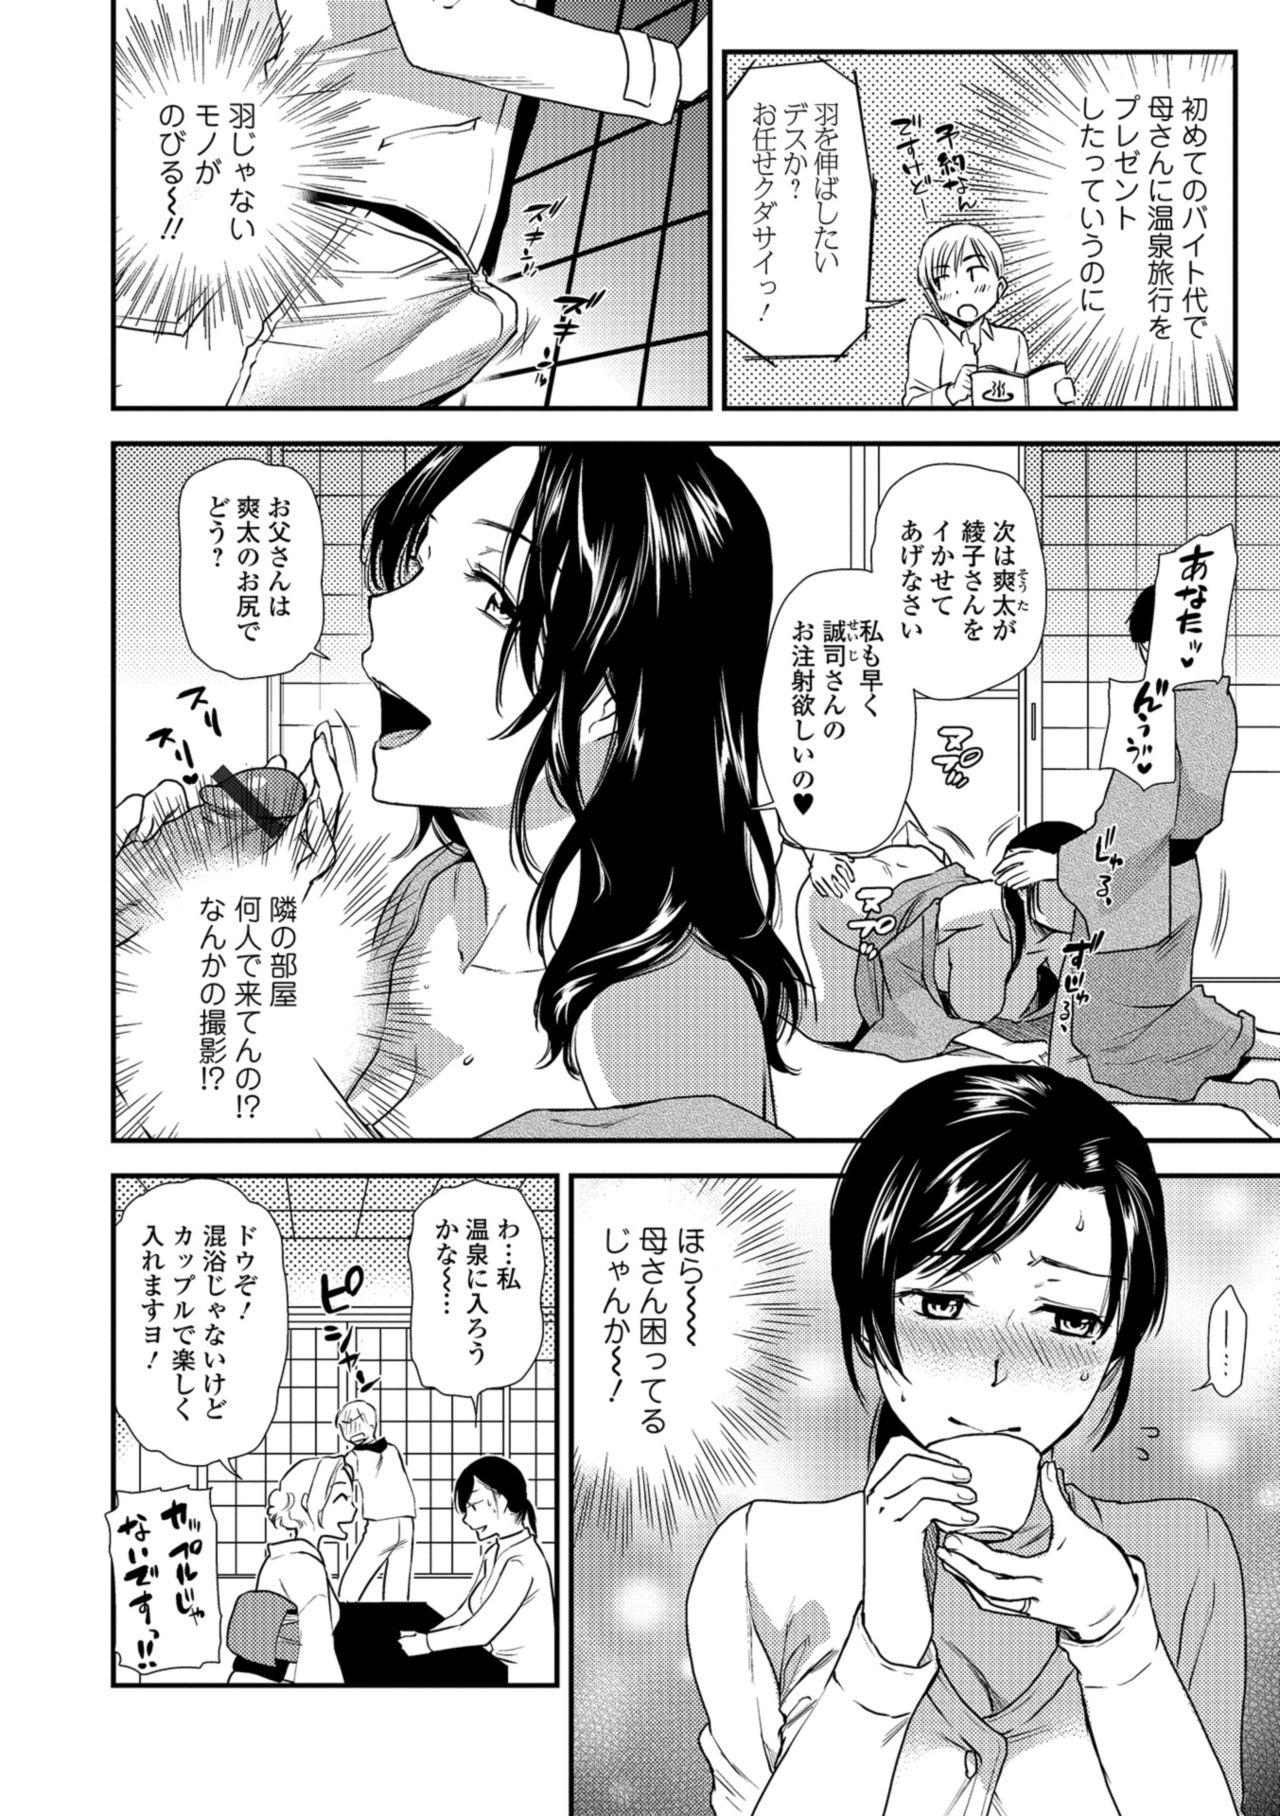 Ninfeta Web Comic Toutetsu Vol. 34 Pounding - Page 4